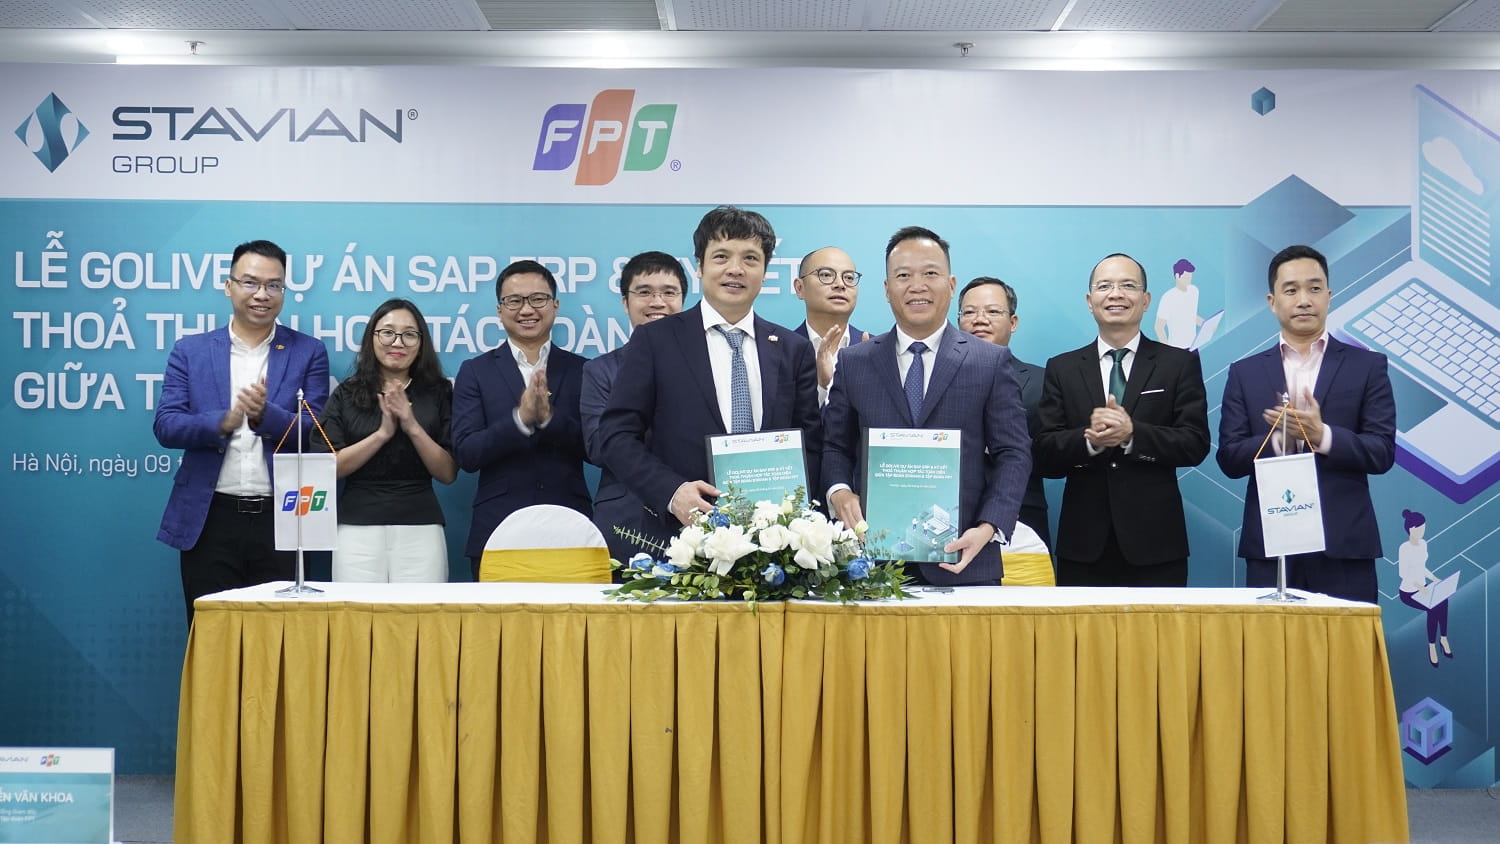 2. Ông Đinh Đức Thắng - Chủ tịch HĐQT Tập đoàn Stavian và ông Nguyễn Văn Khoa - Tổng giám đốc Tập đoàn FPT ký kết thỏa thuận hợp tác toàn diện.